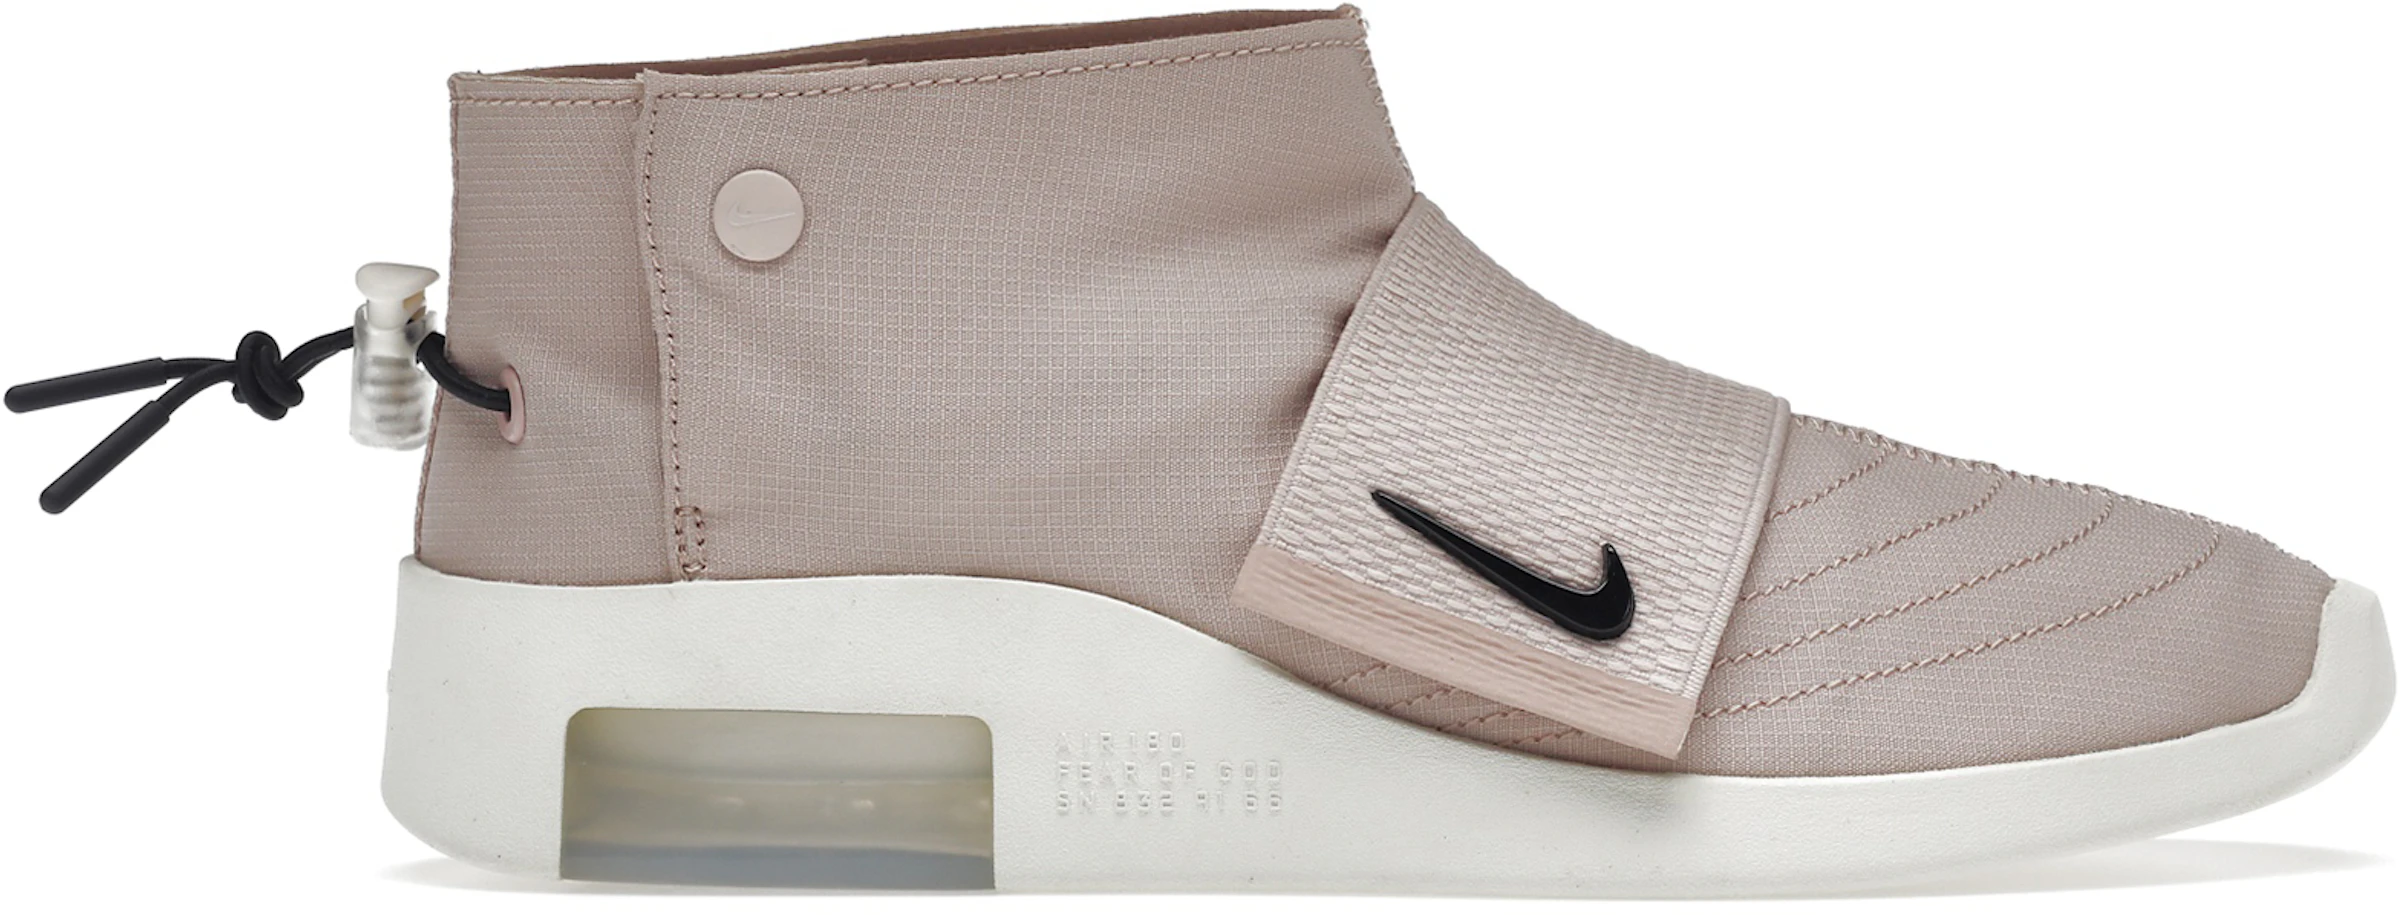 Corteza Calle Ciudadanía Compra Nike Fear Of God Size 11 Calzado y sneakers nuevos - StockX